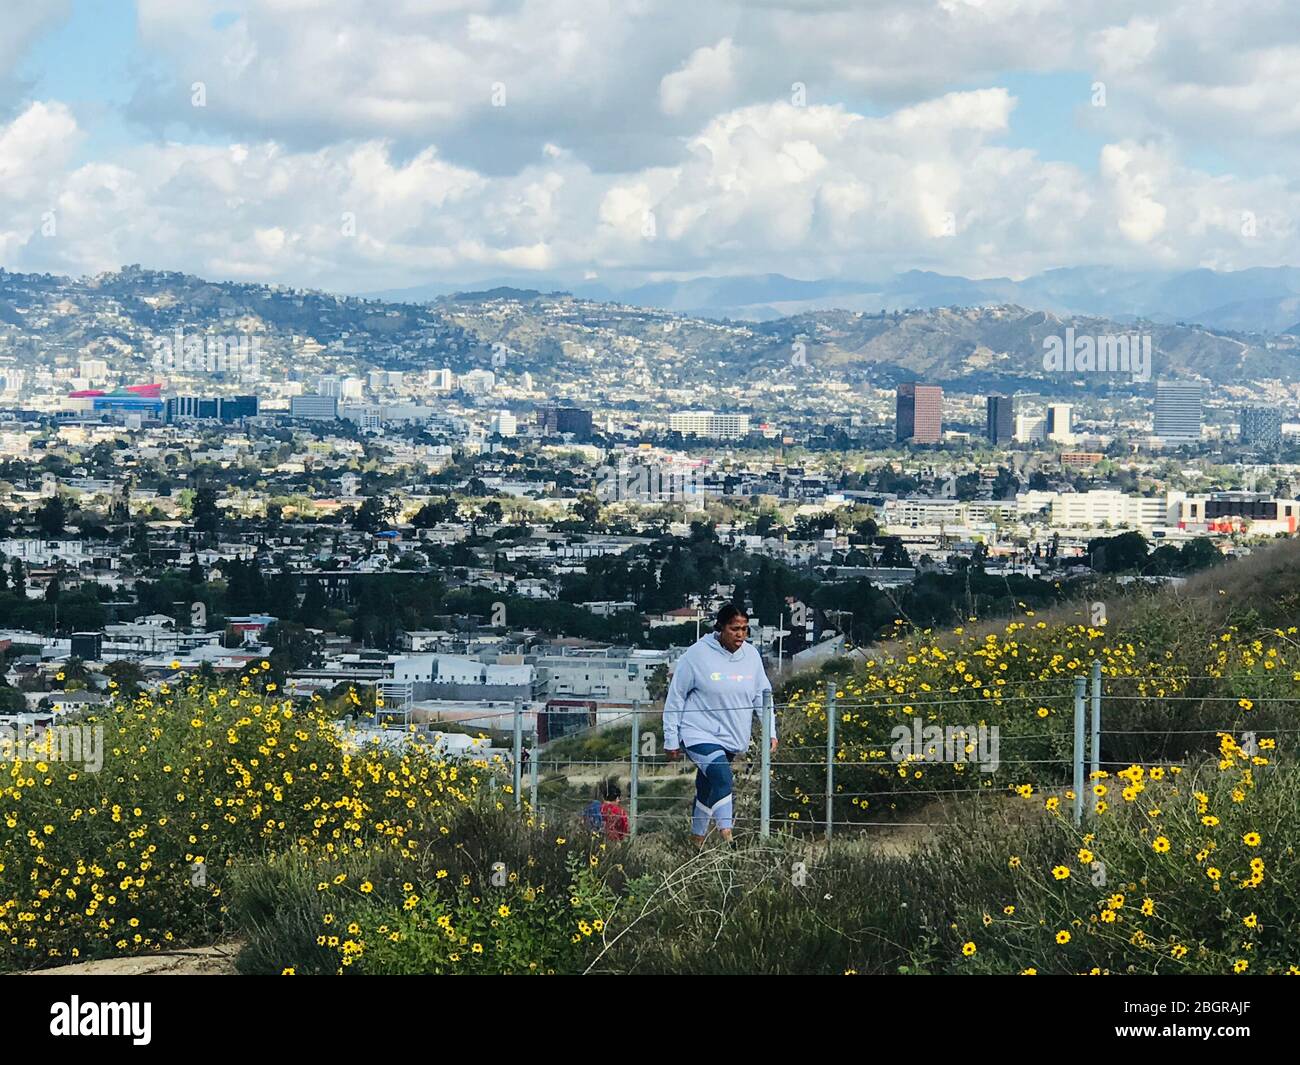 Menschen wandern auf dem Pfad mit Blumen in den Baldwin Hills über Culver City und das Los Angeles Becken an einem klaren Tag. Stockfoto